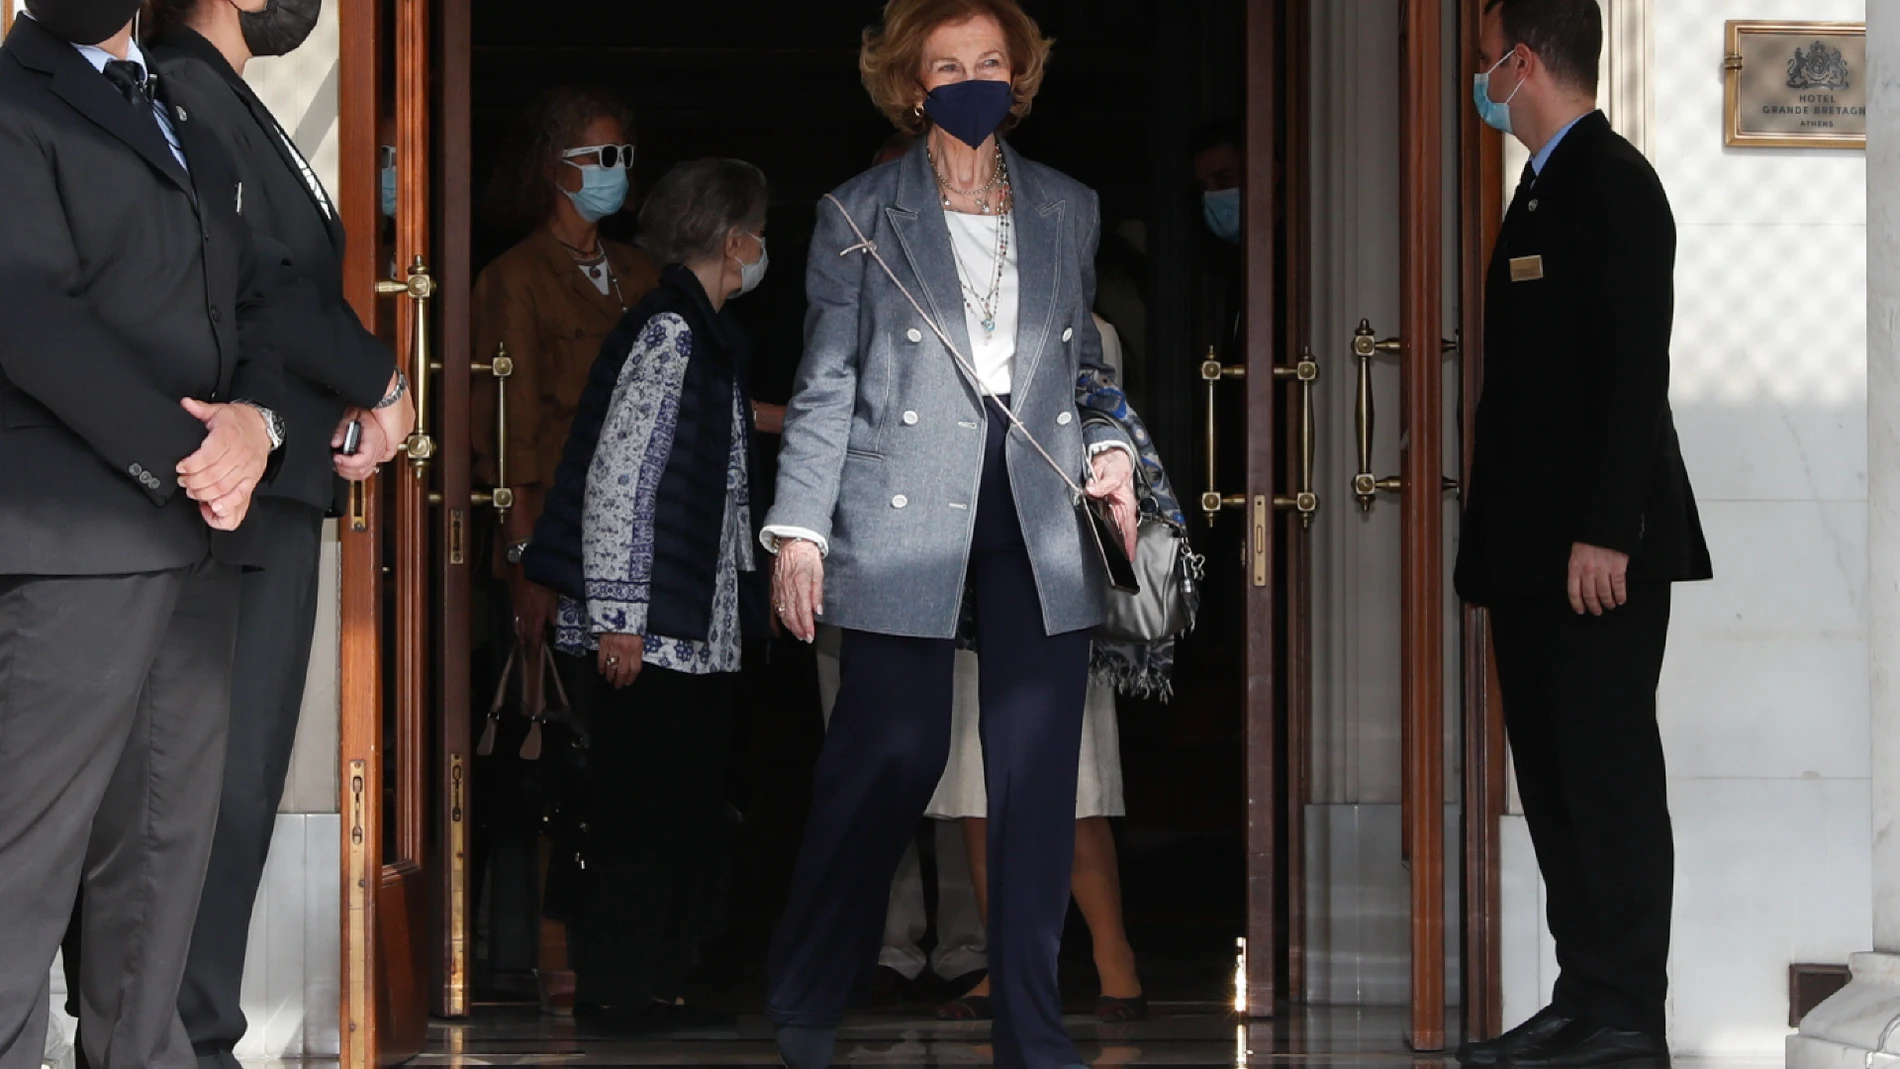 La Reina Sofía saliendo de su hotel en Atenas